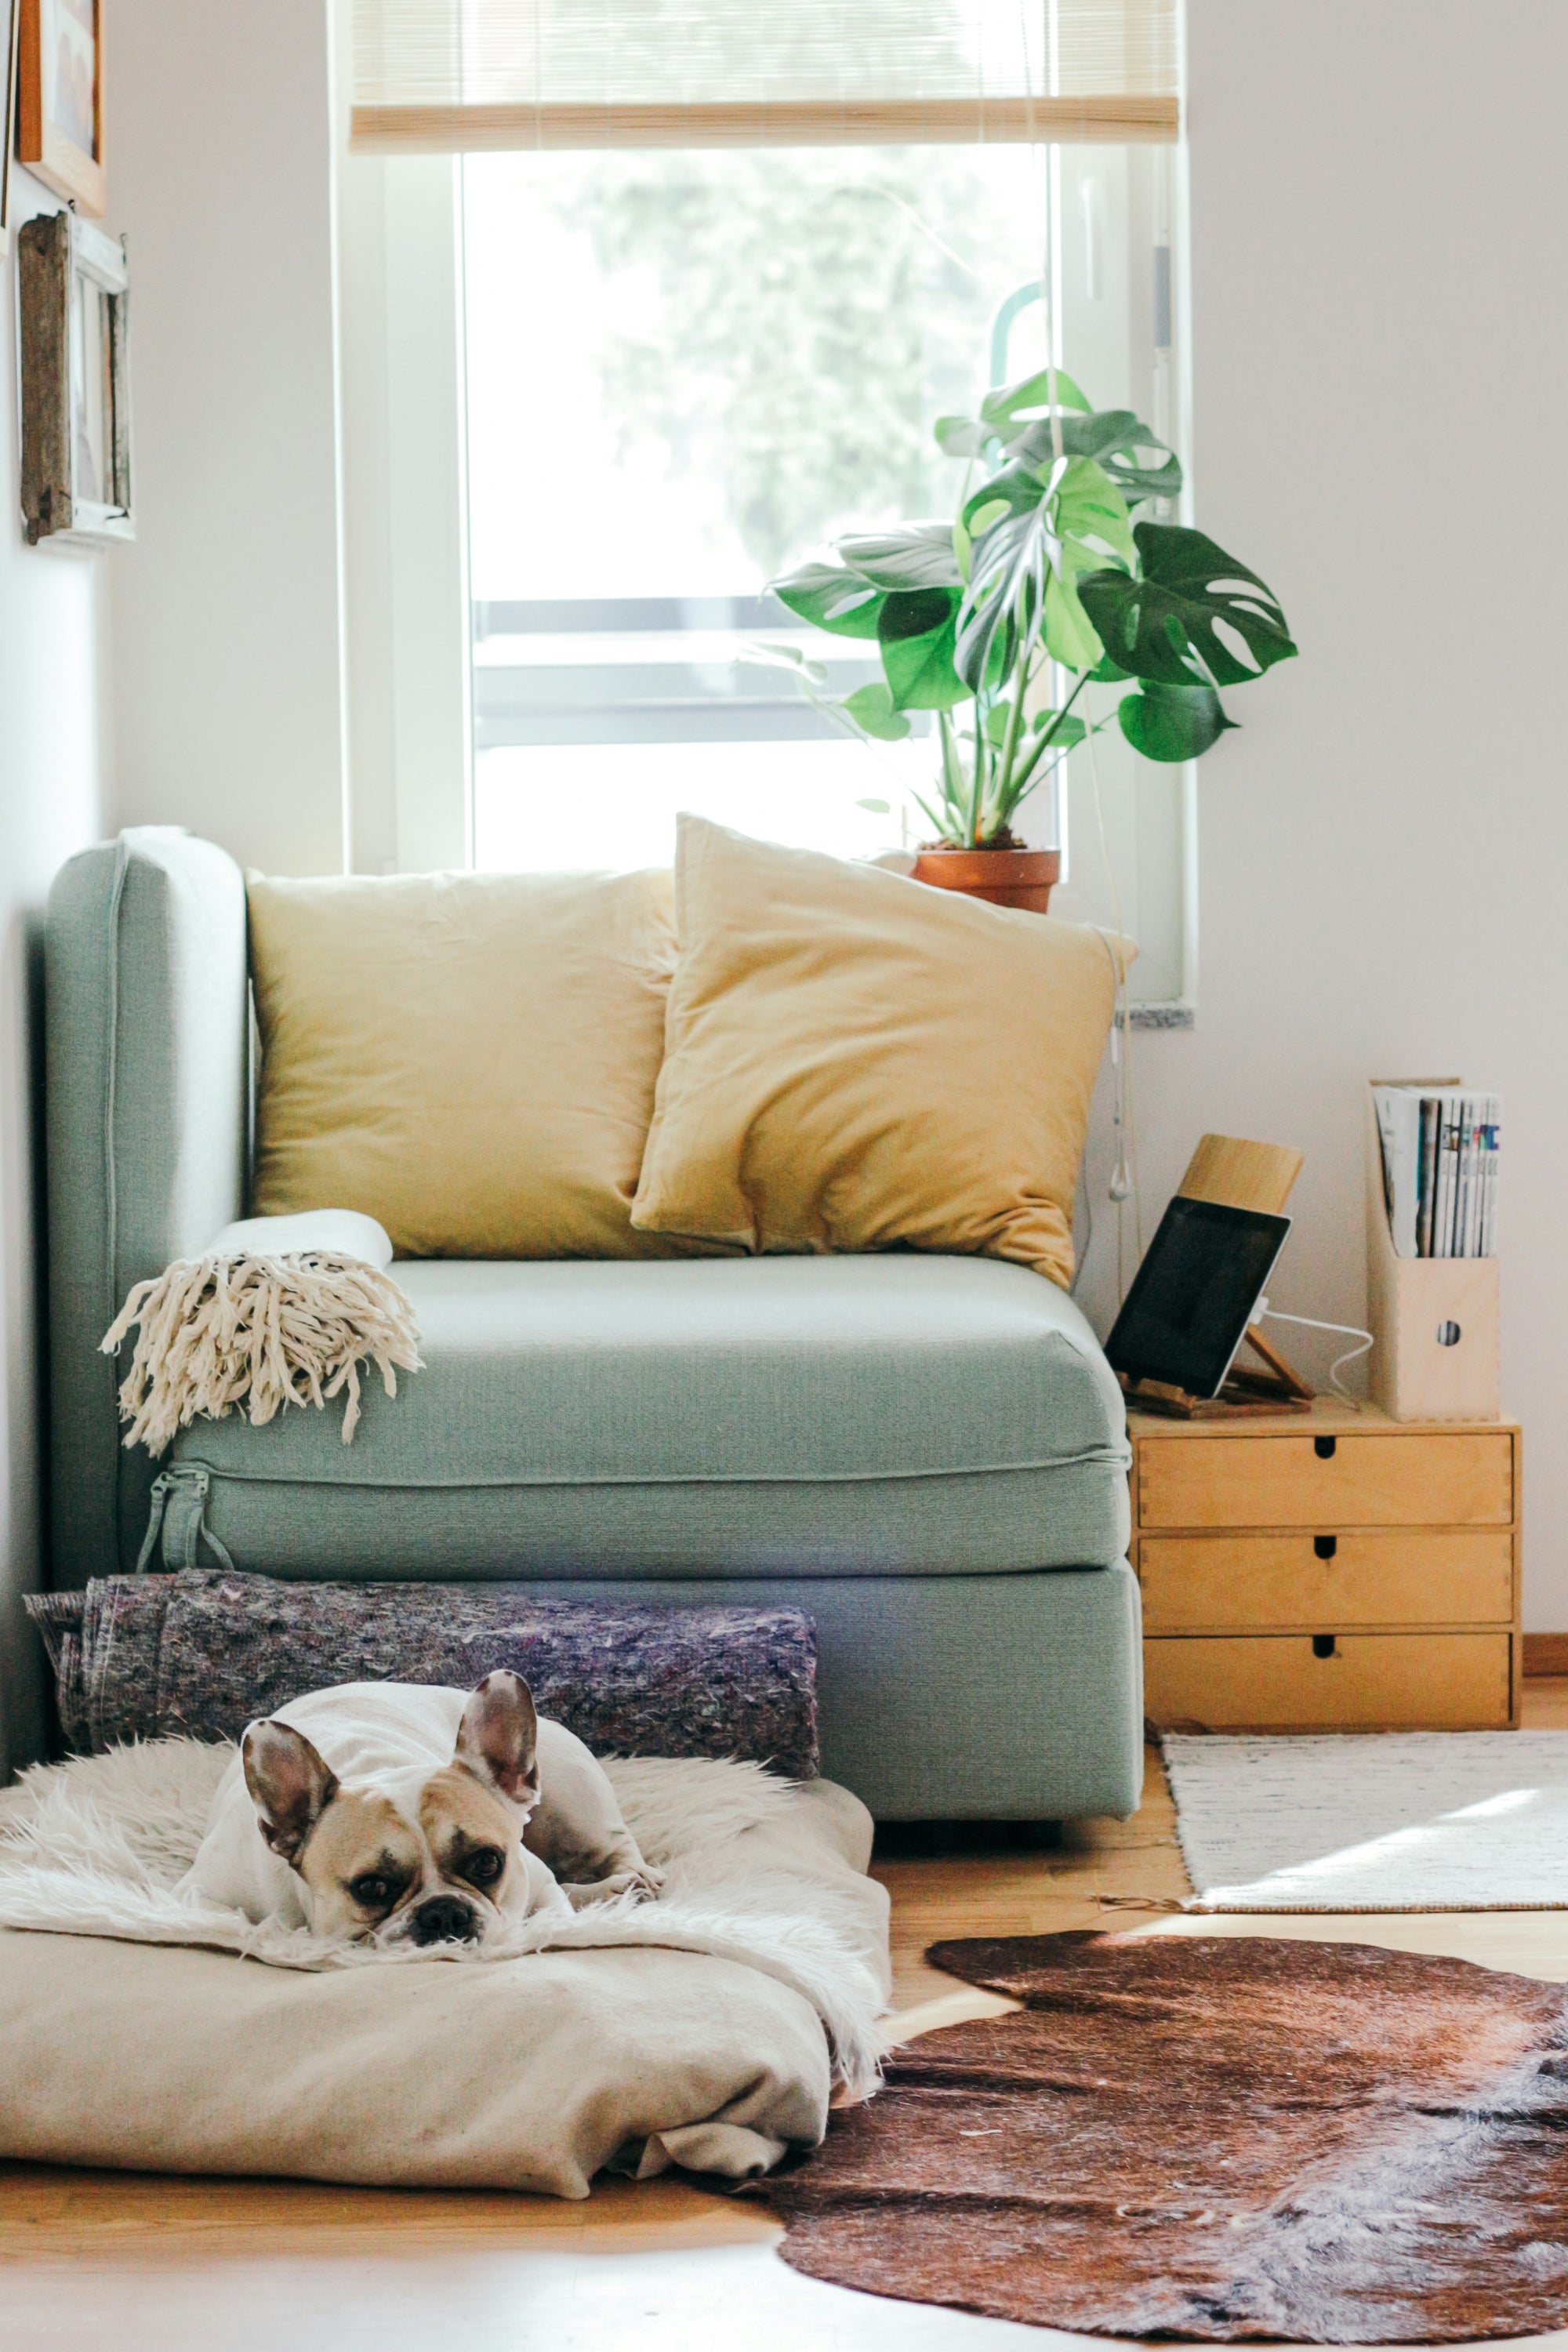 Bild mit gemütlichem Sofa in einer hellen, freundlichen Wohnung.